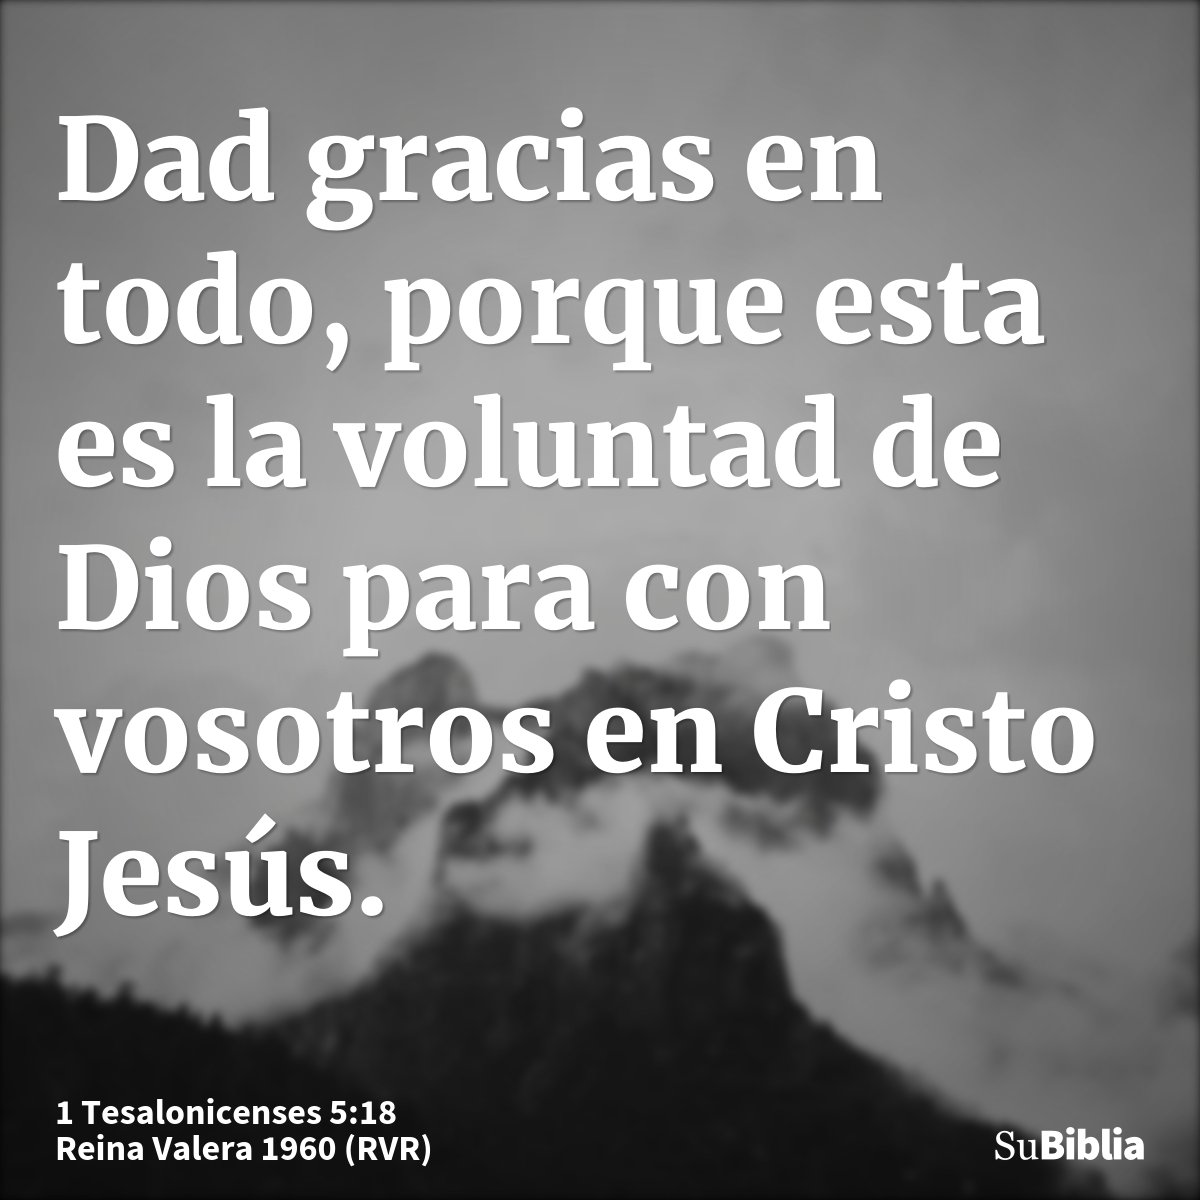 Dad gracias en todo, porque esta es la voluntad de Dios para con vosotros en Cristo Jesús.